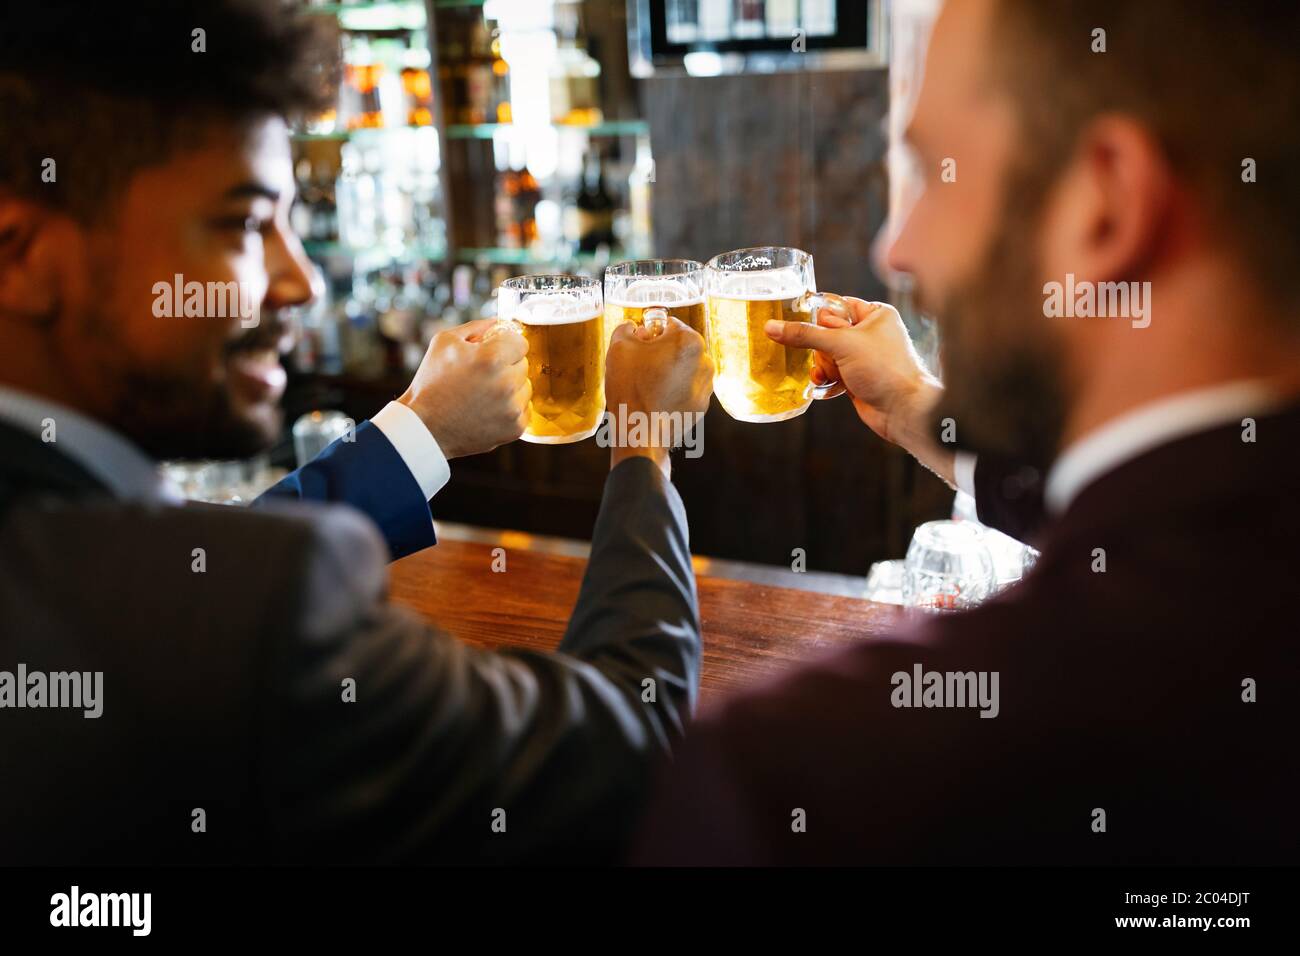 Persone, uomini, tempo libero, amicizia e celebrazione concetto. Amici maschi felici che bevono birra al pub Foto Stock